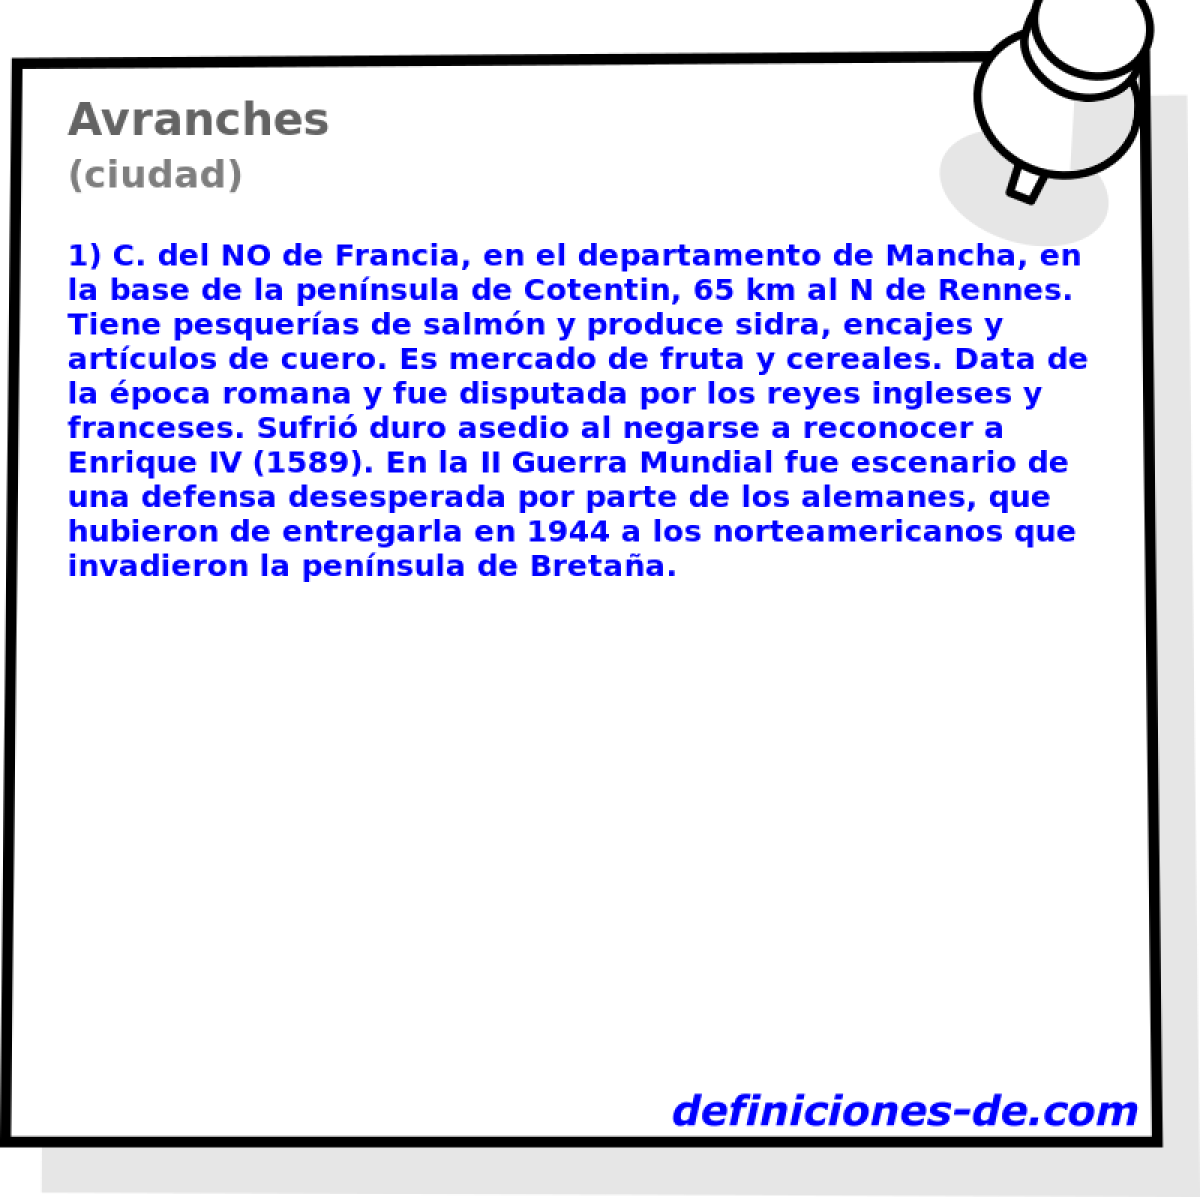 Avranches (ciudad)